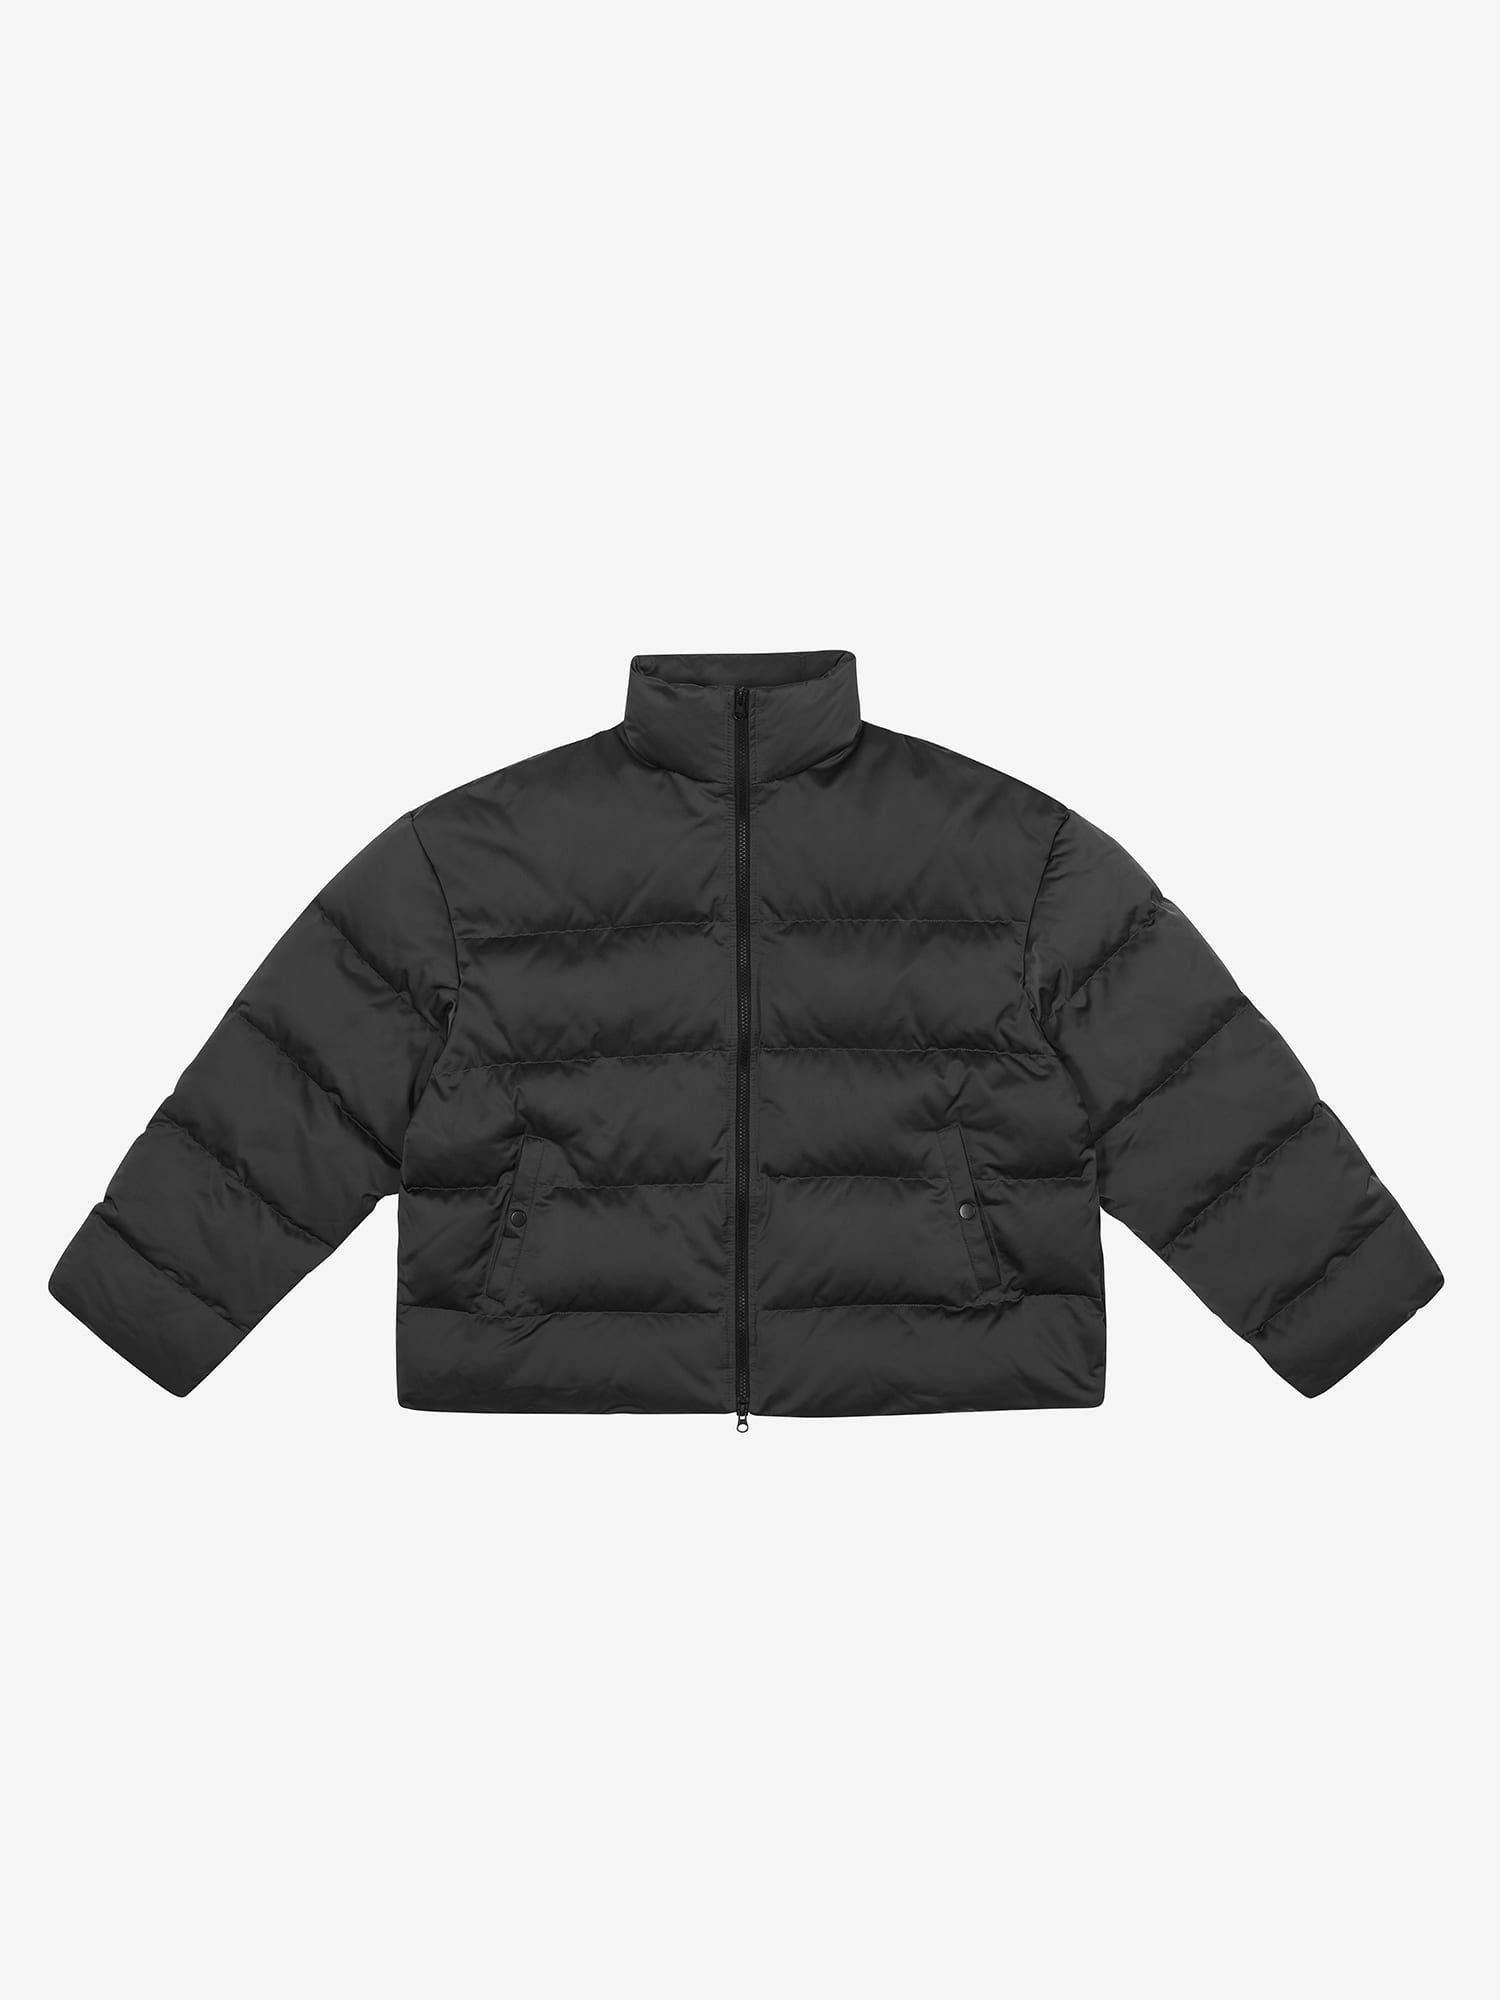 Oversized Padded Jacket - Charcoal